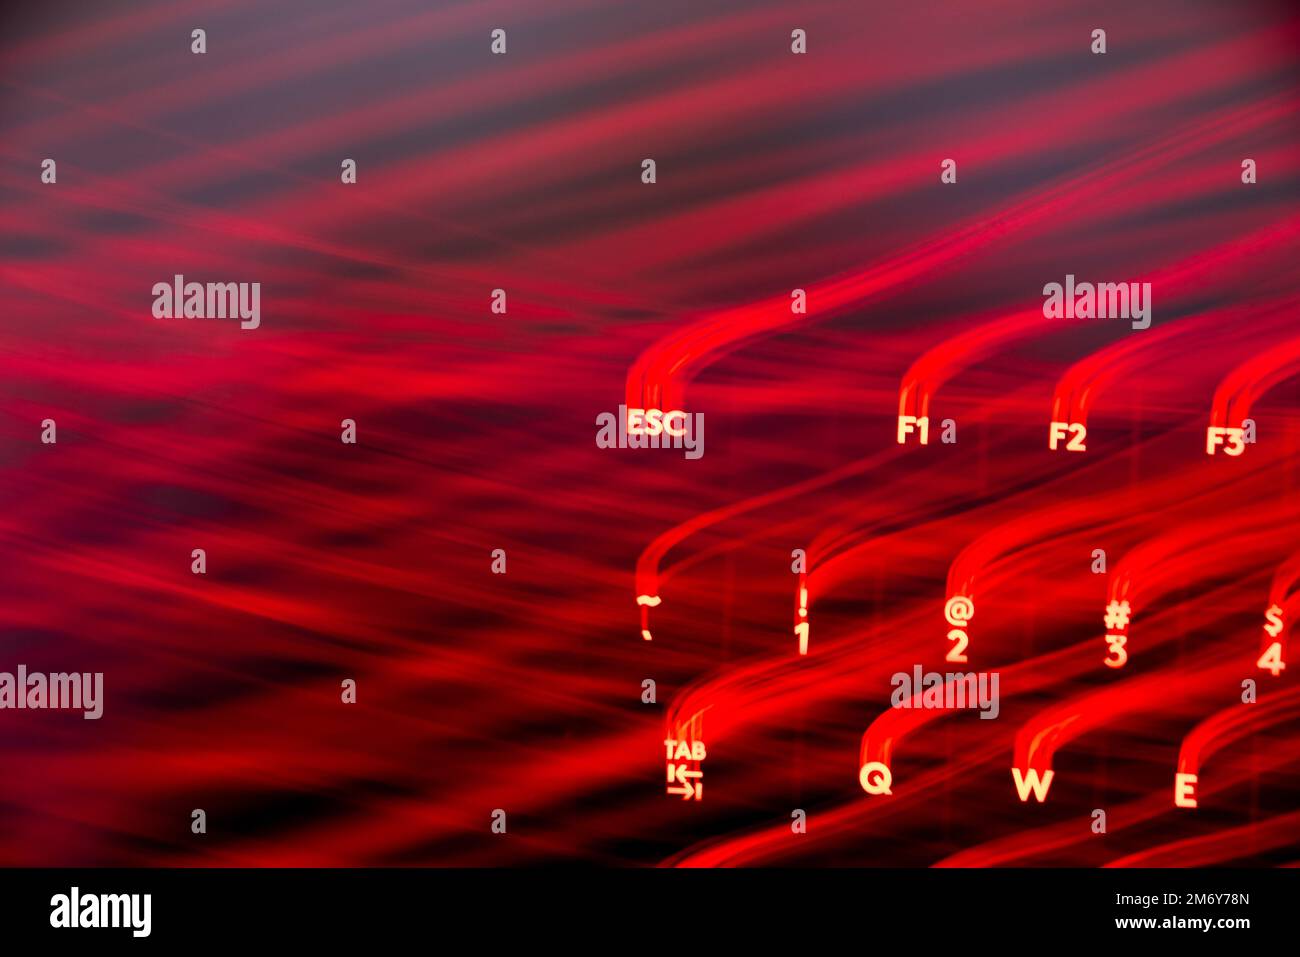 Helle Malerei auf Tastaturbuchstaben. Wunderschöner, farbenfroher Hintergrund. Lichtermalerei mit langer Belichtung. Rote gekrümmte Linien in leuchtendem Neon auf schwarzem Hintergrund. Stockfoto